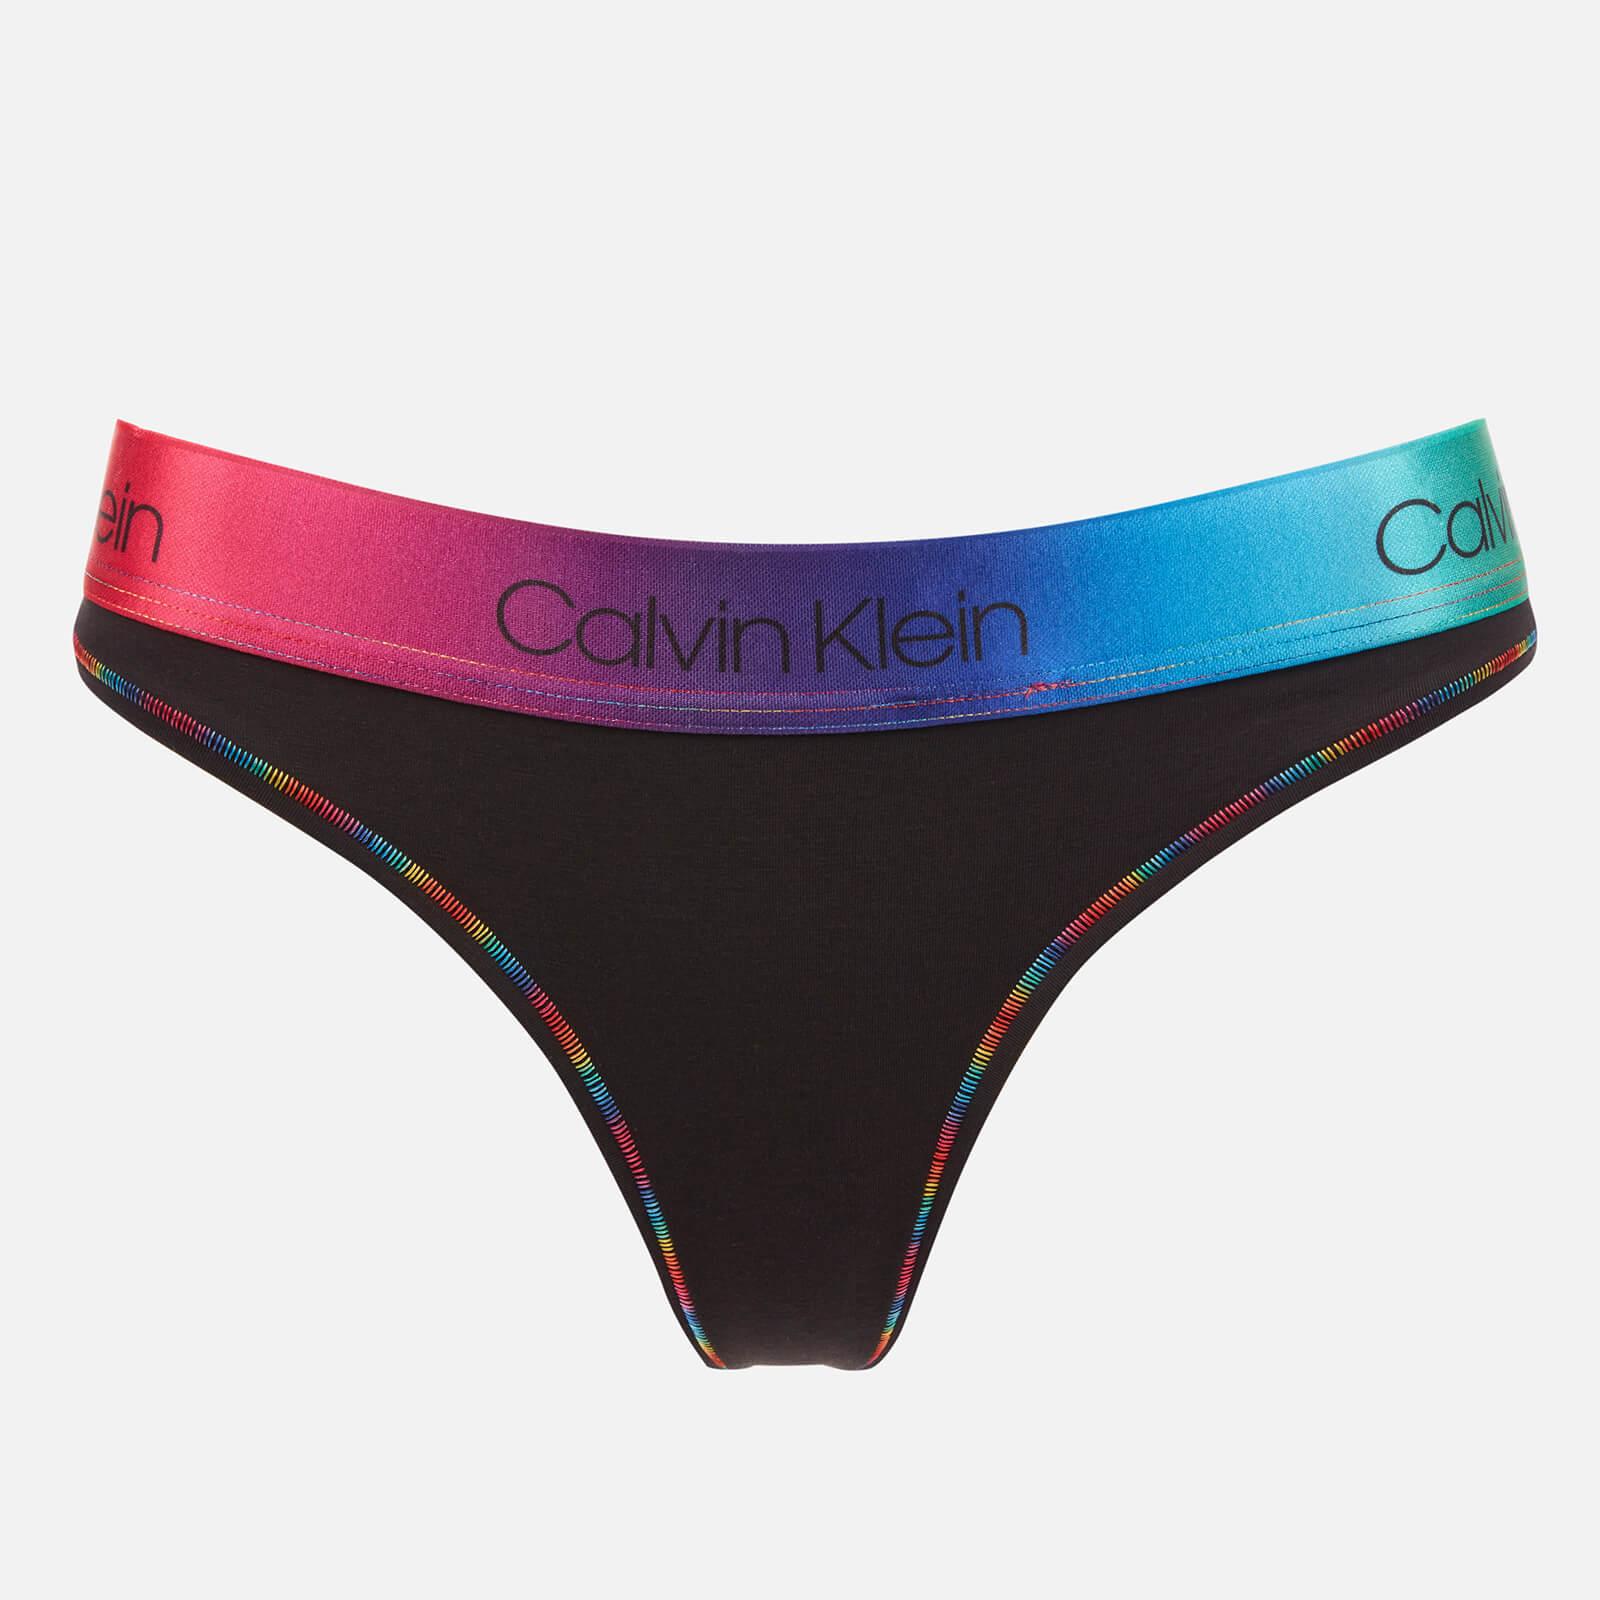 Calvin Klein Pride Thong